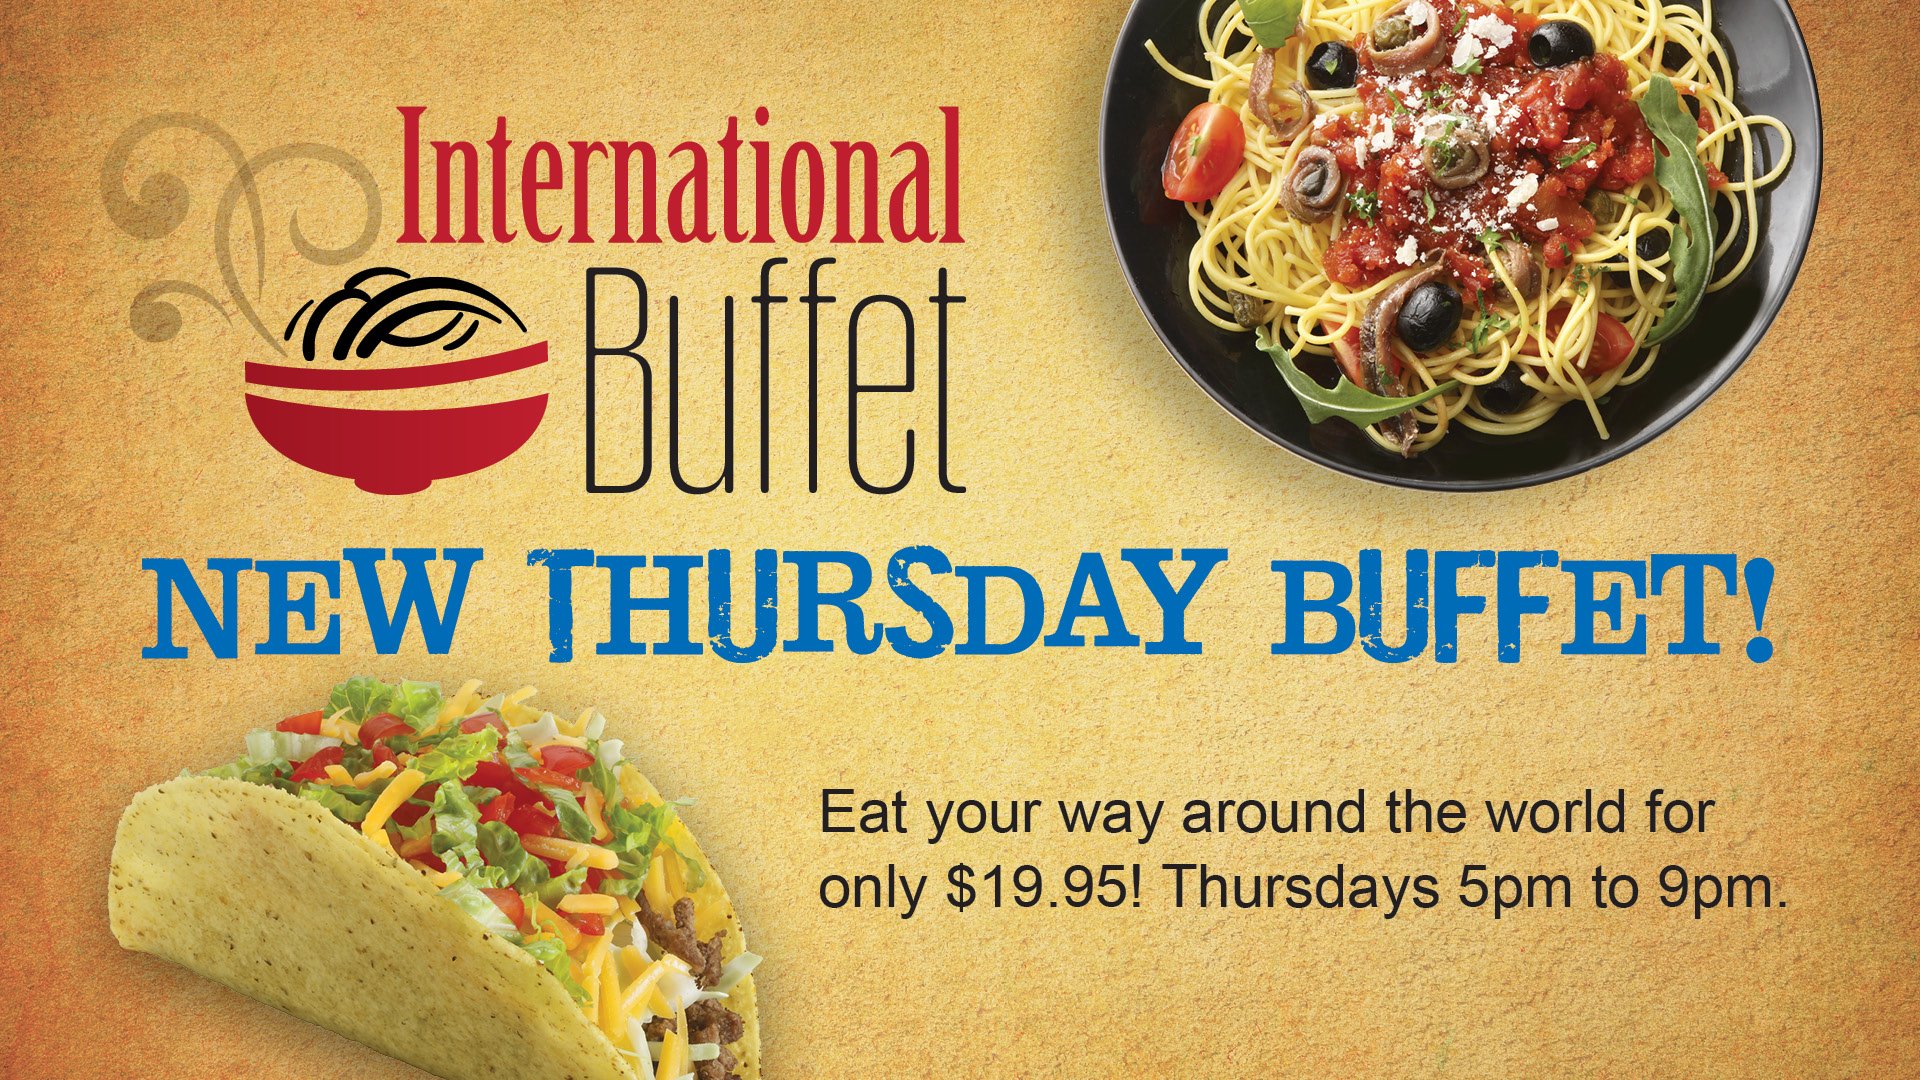 International Buffet On Thursdays